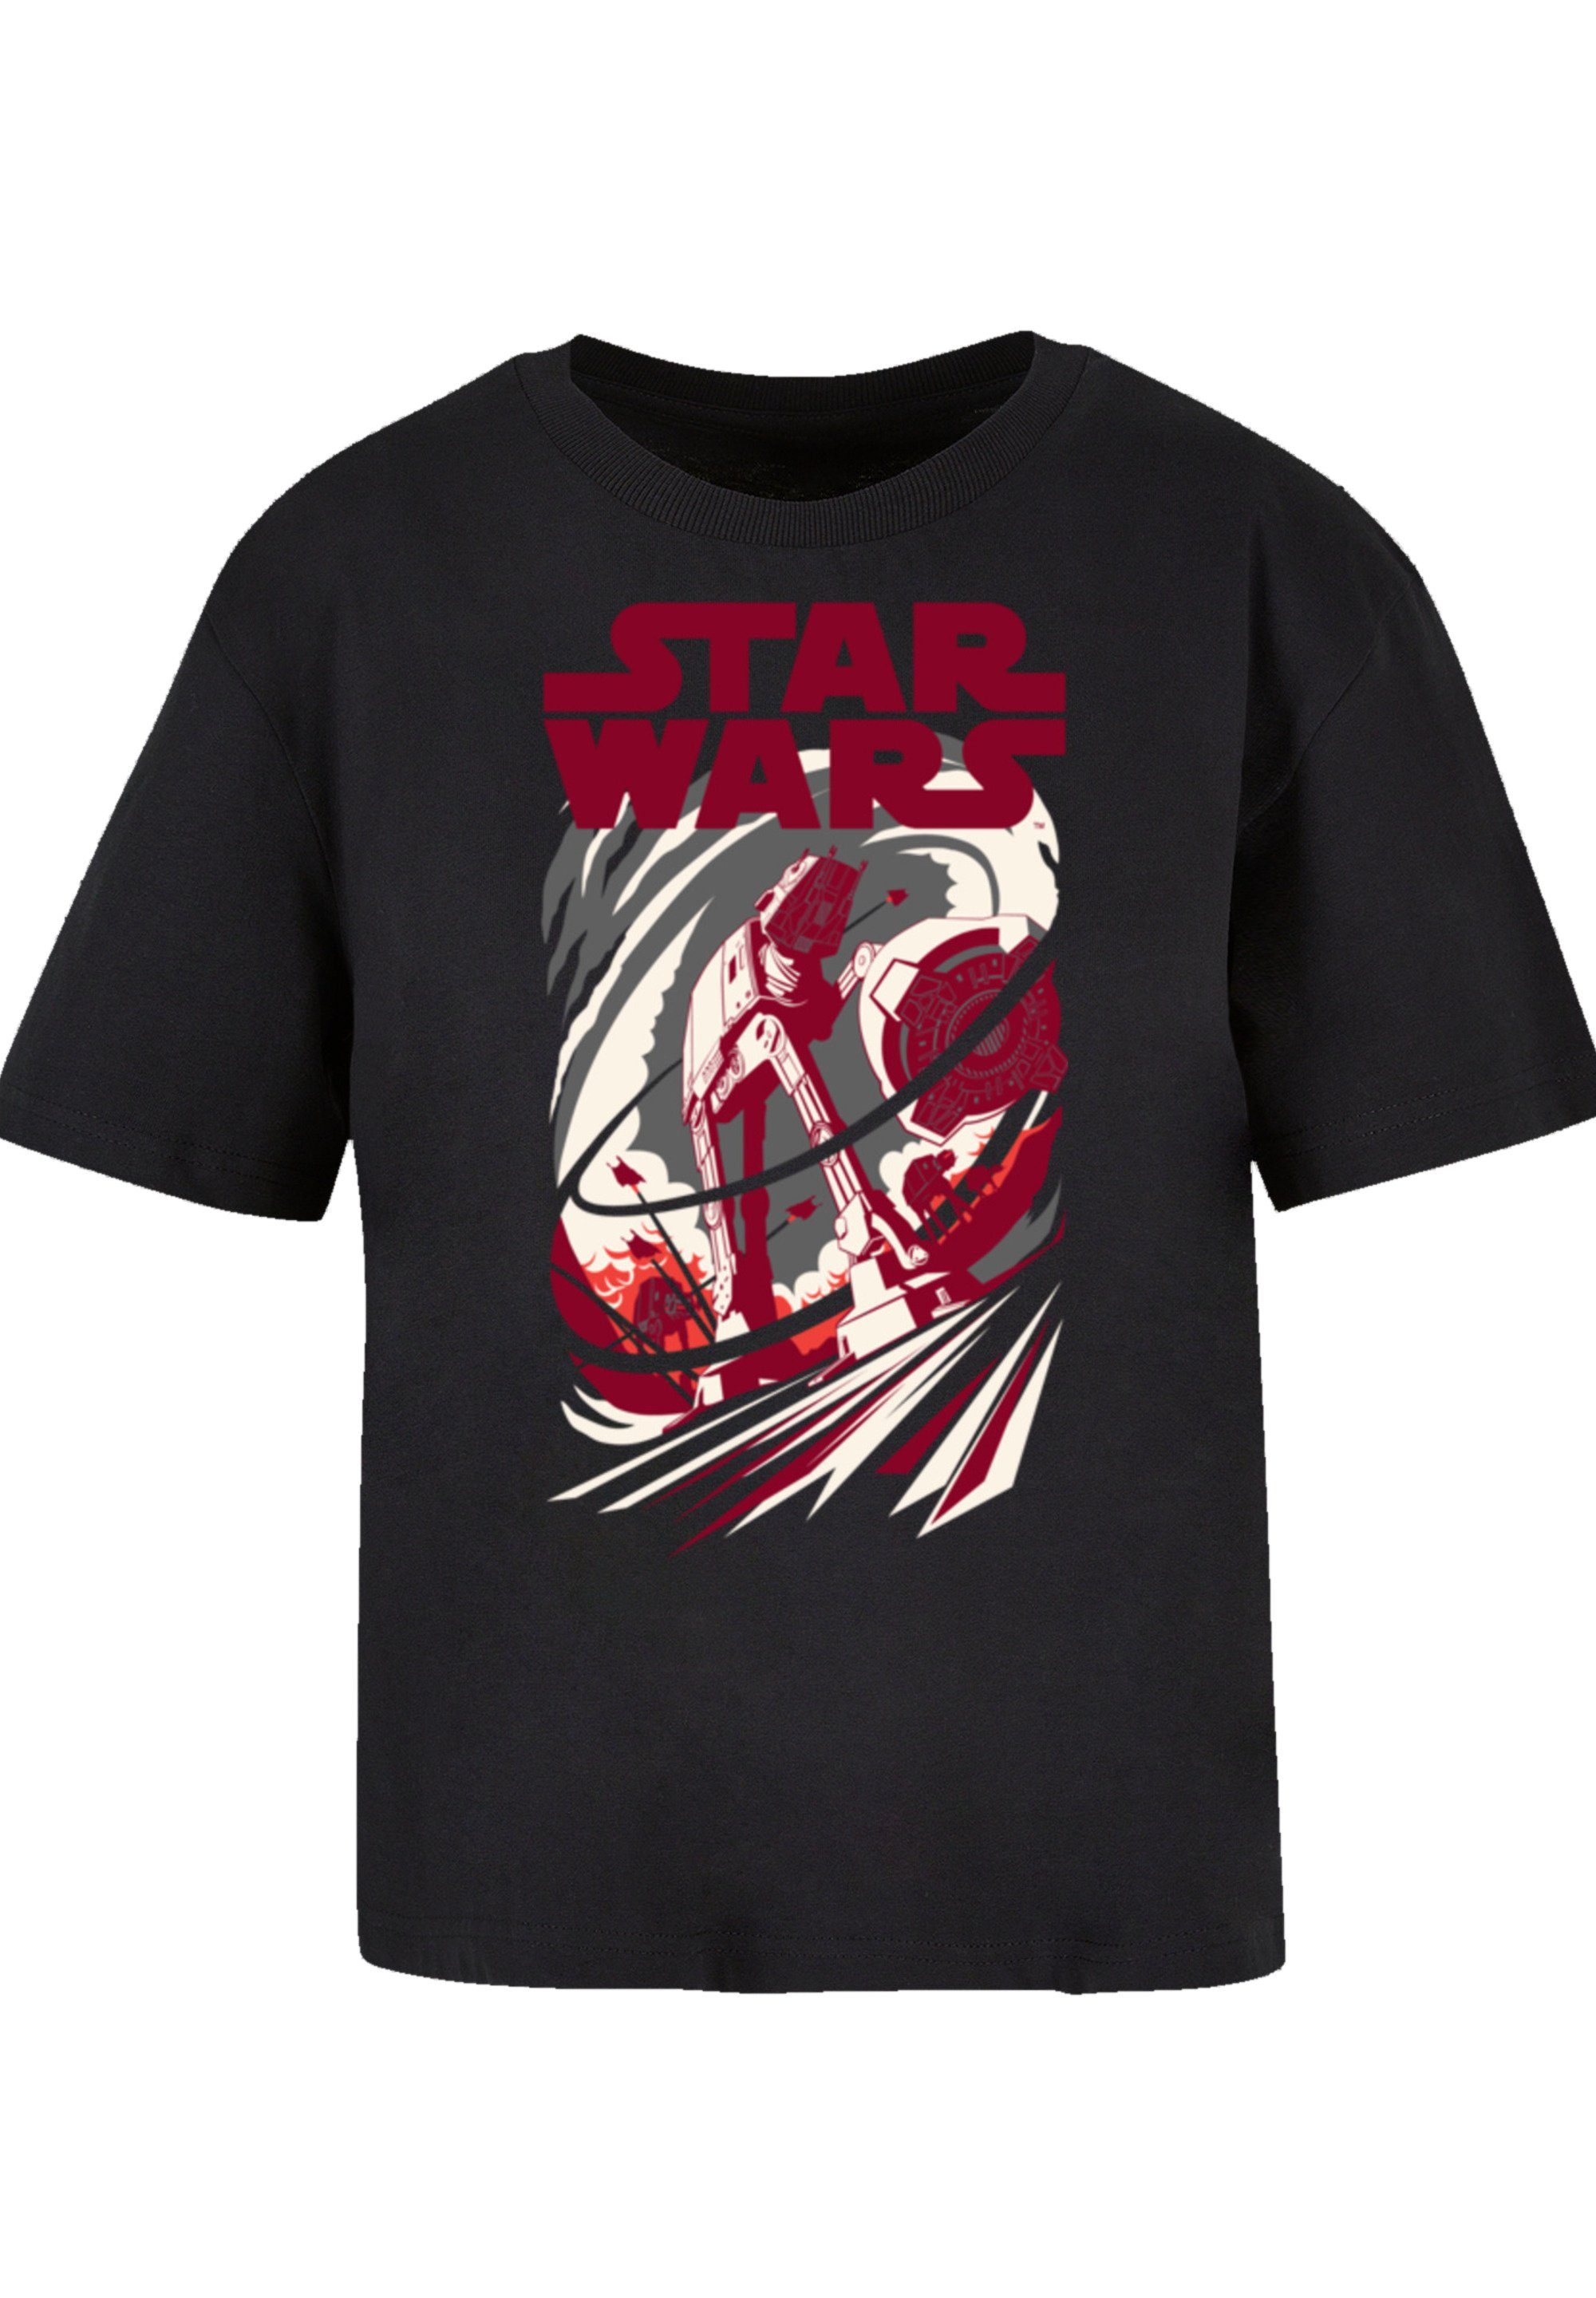 Premium Wars Turmoil F4NT4STIC Star T-Shirt Qualität